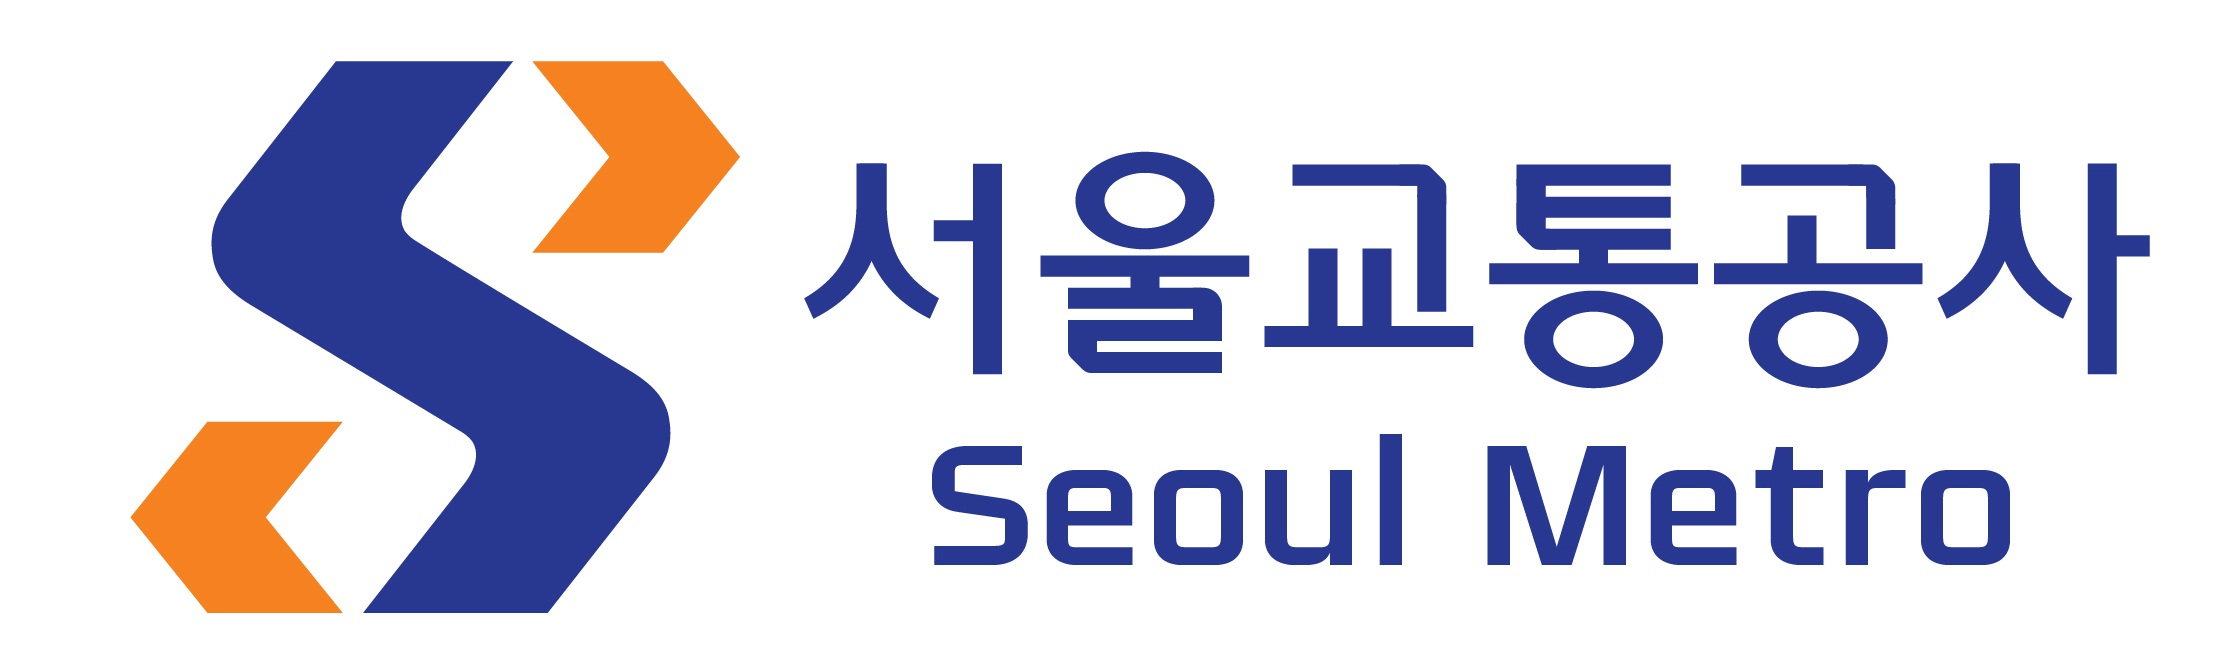 기하학적 이미지인 S(Safety, Service, Seoul 의미)의 두 획 끝을 화살표로 표현하여 교통문화의 새로운 방향성을 제시하는 공사 이미지를 구축